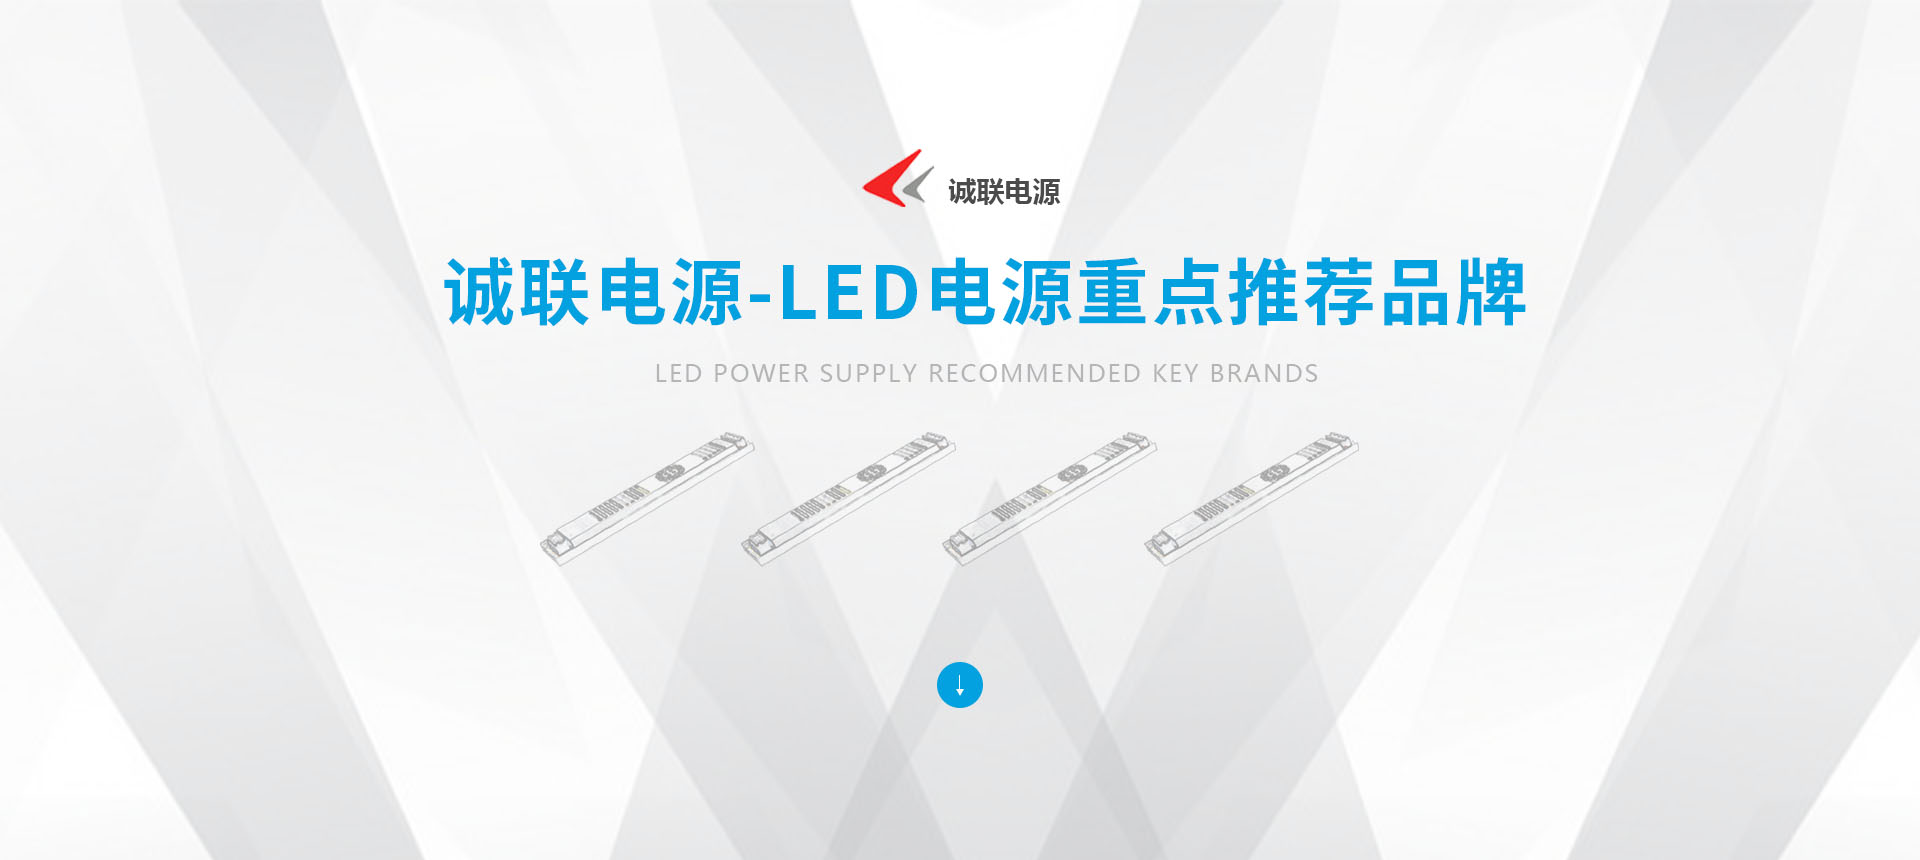 官网赌博软件下载安卓-LED电源重点推荐品牌